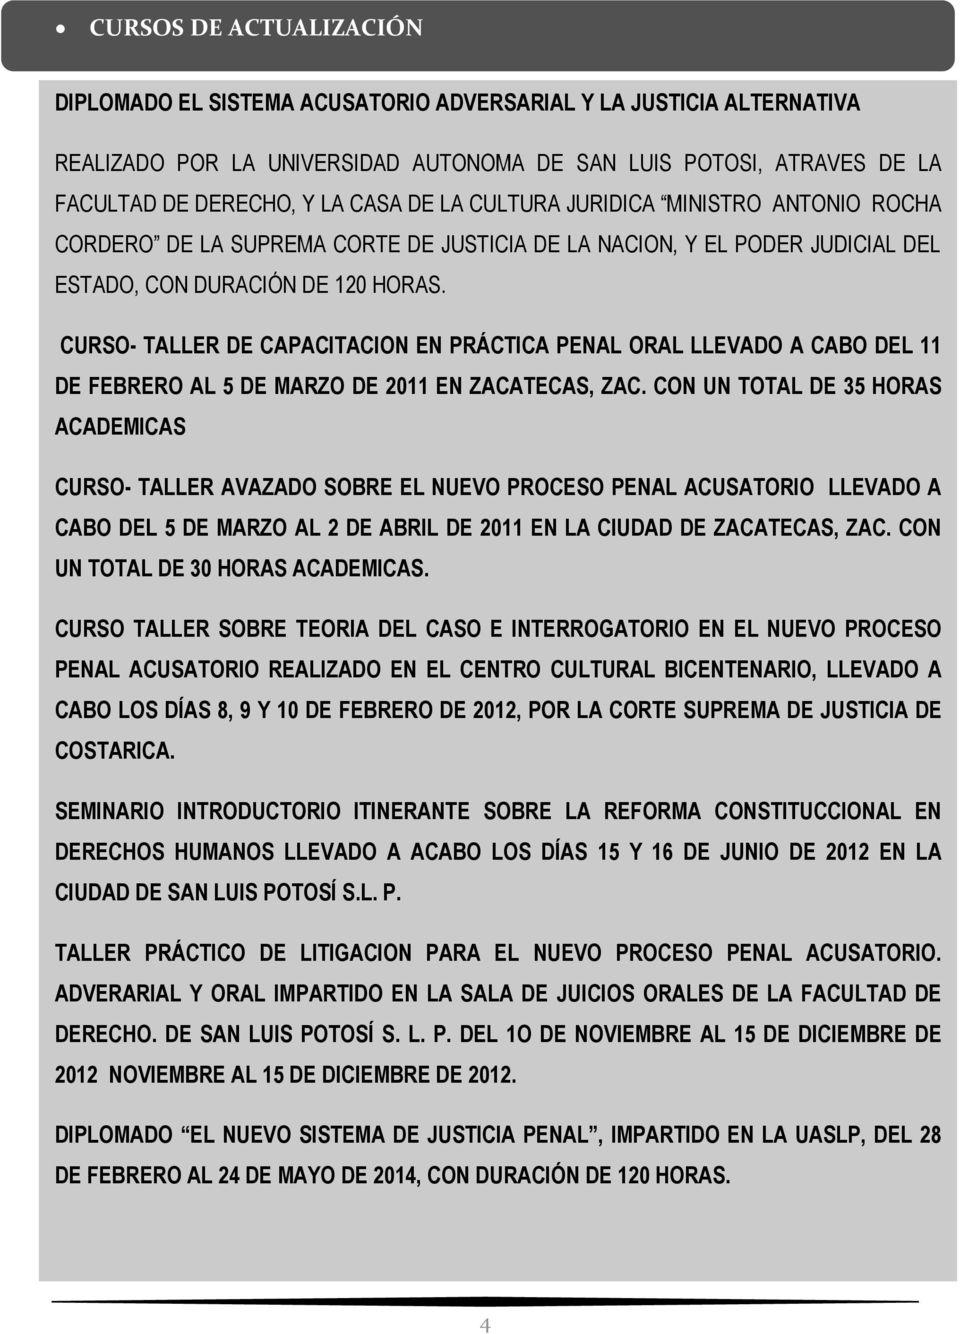 CURSO- TALLER DE CAPACITACION EN PRÁCTICA PENAL ORAL LLEVADO A CABO DEL 11 DE FEBRERO AL 5 DE MARZO DE 2011 EN ZACATECAS, ZAC.